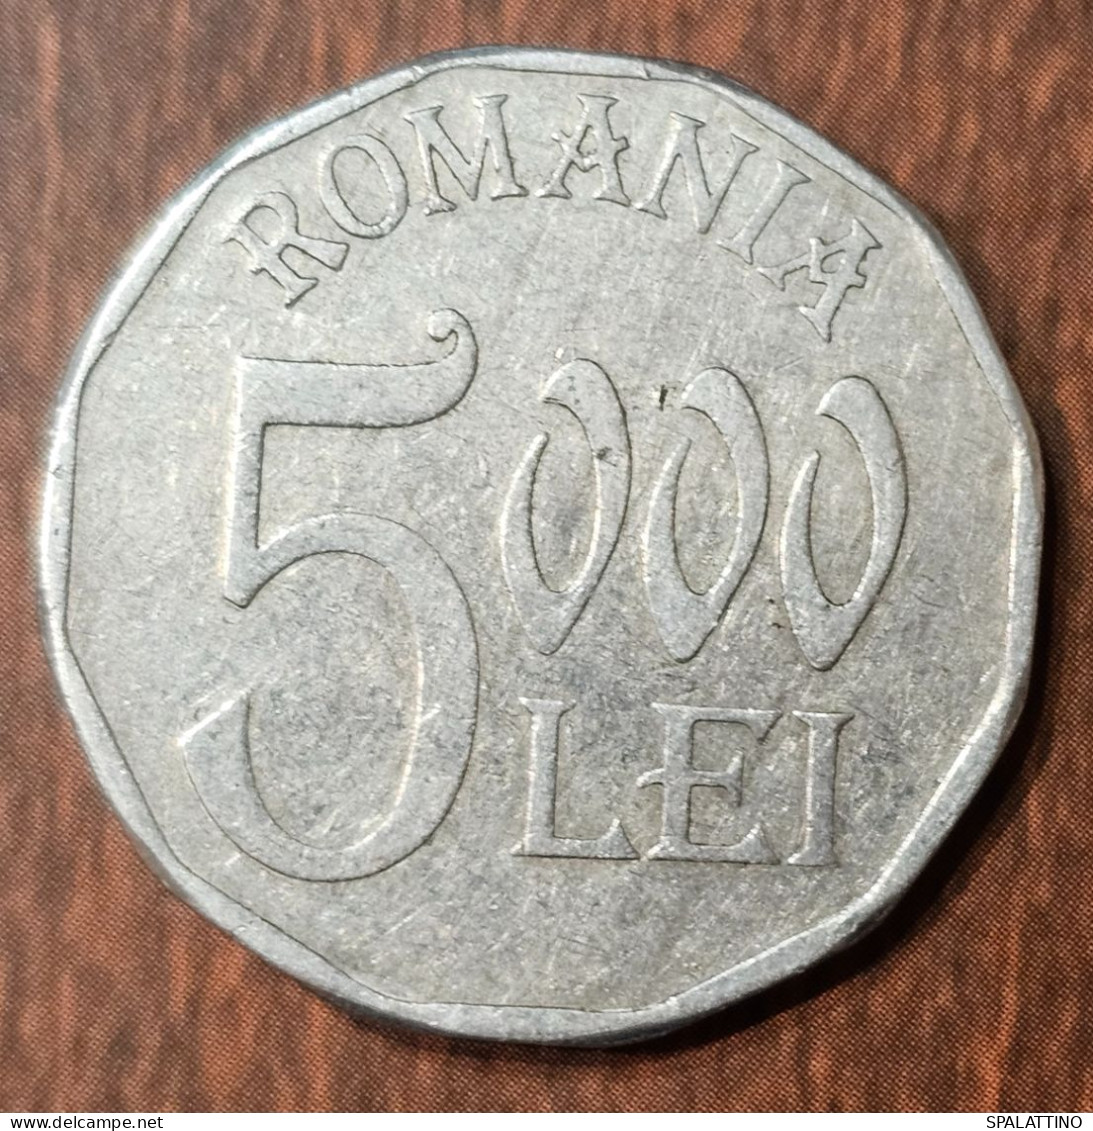 ROMANIA- 5000 LEI 2001. - Rumänien